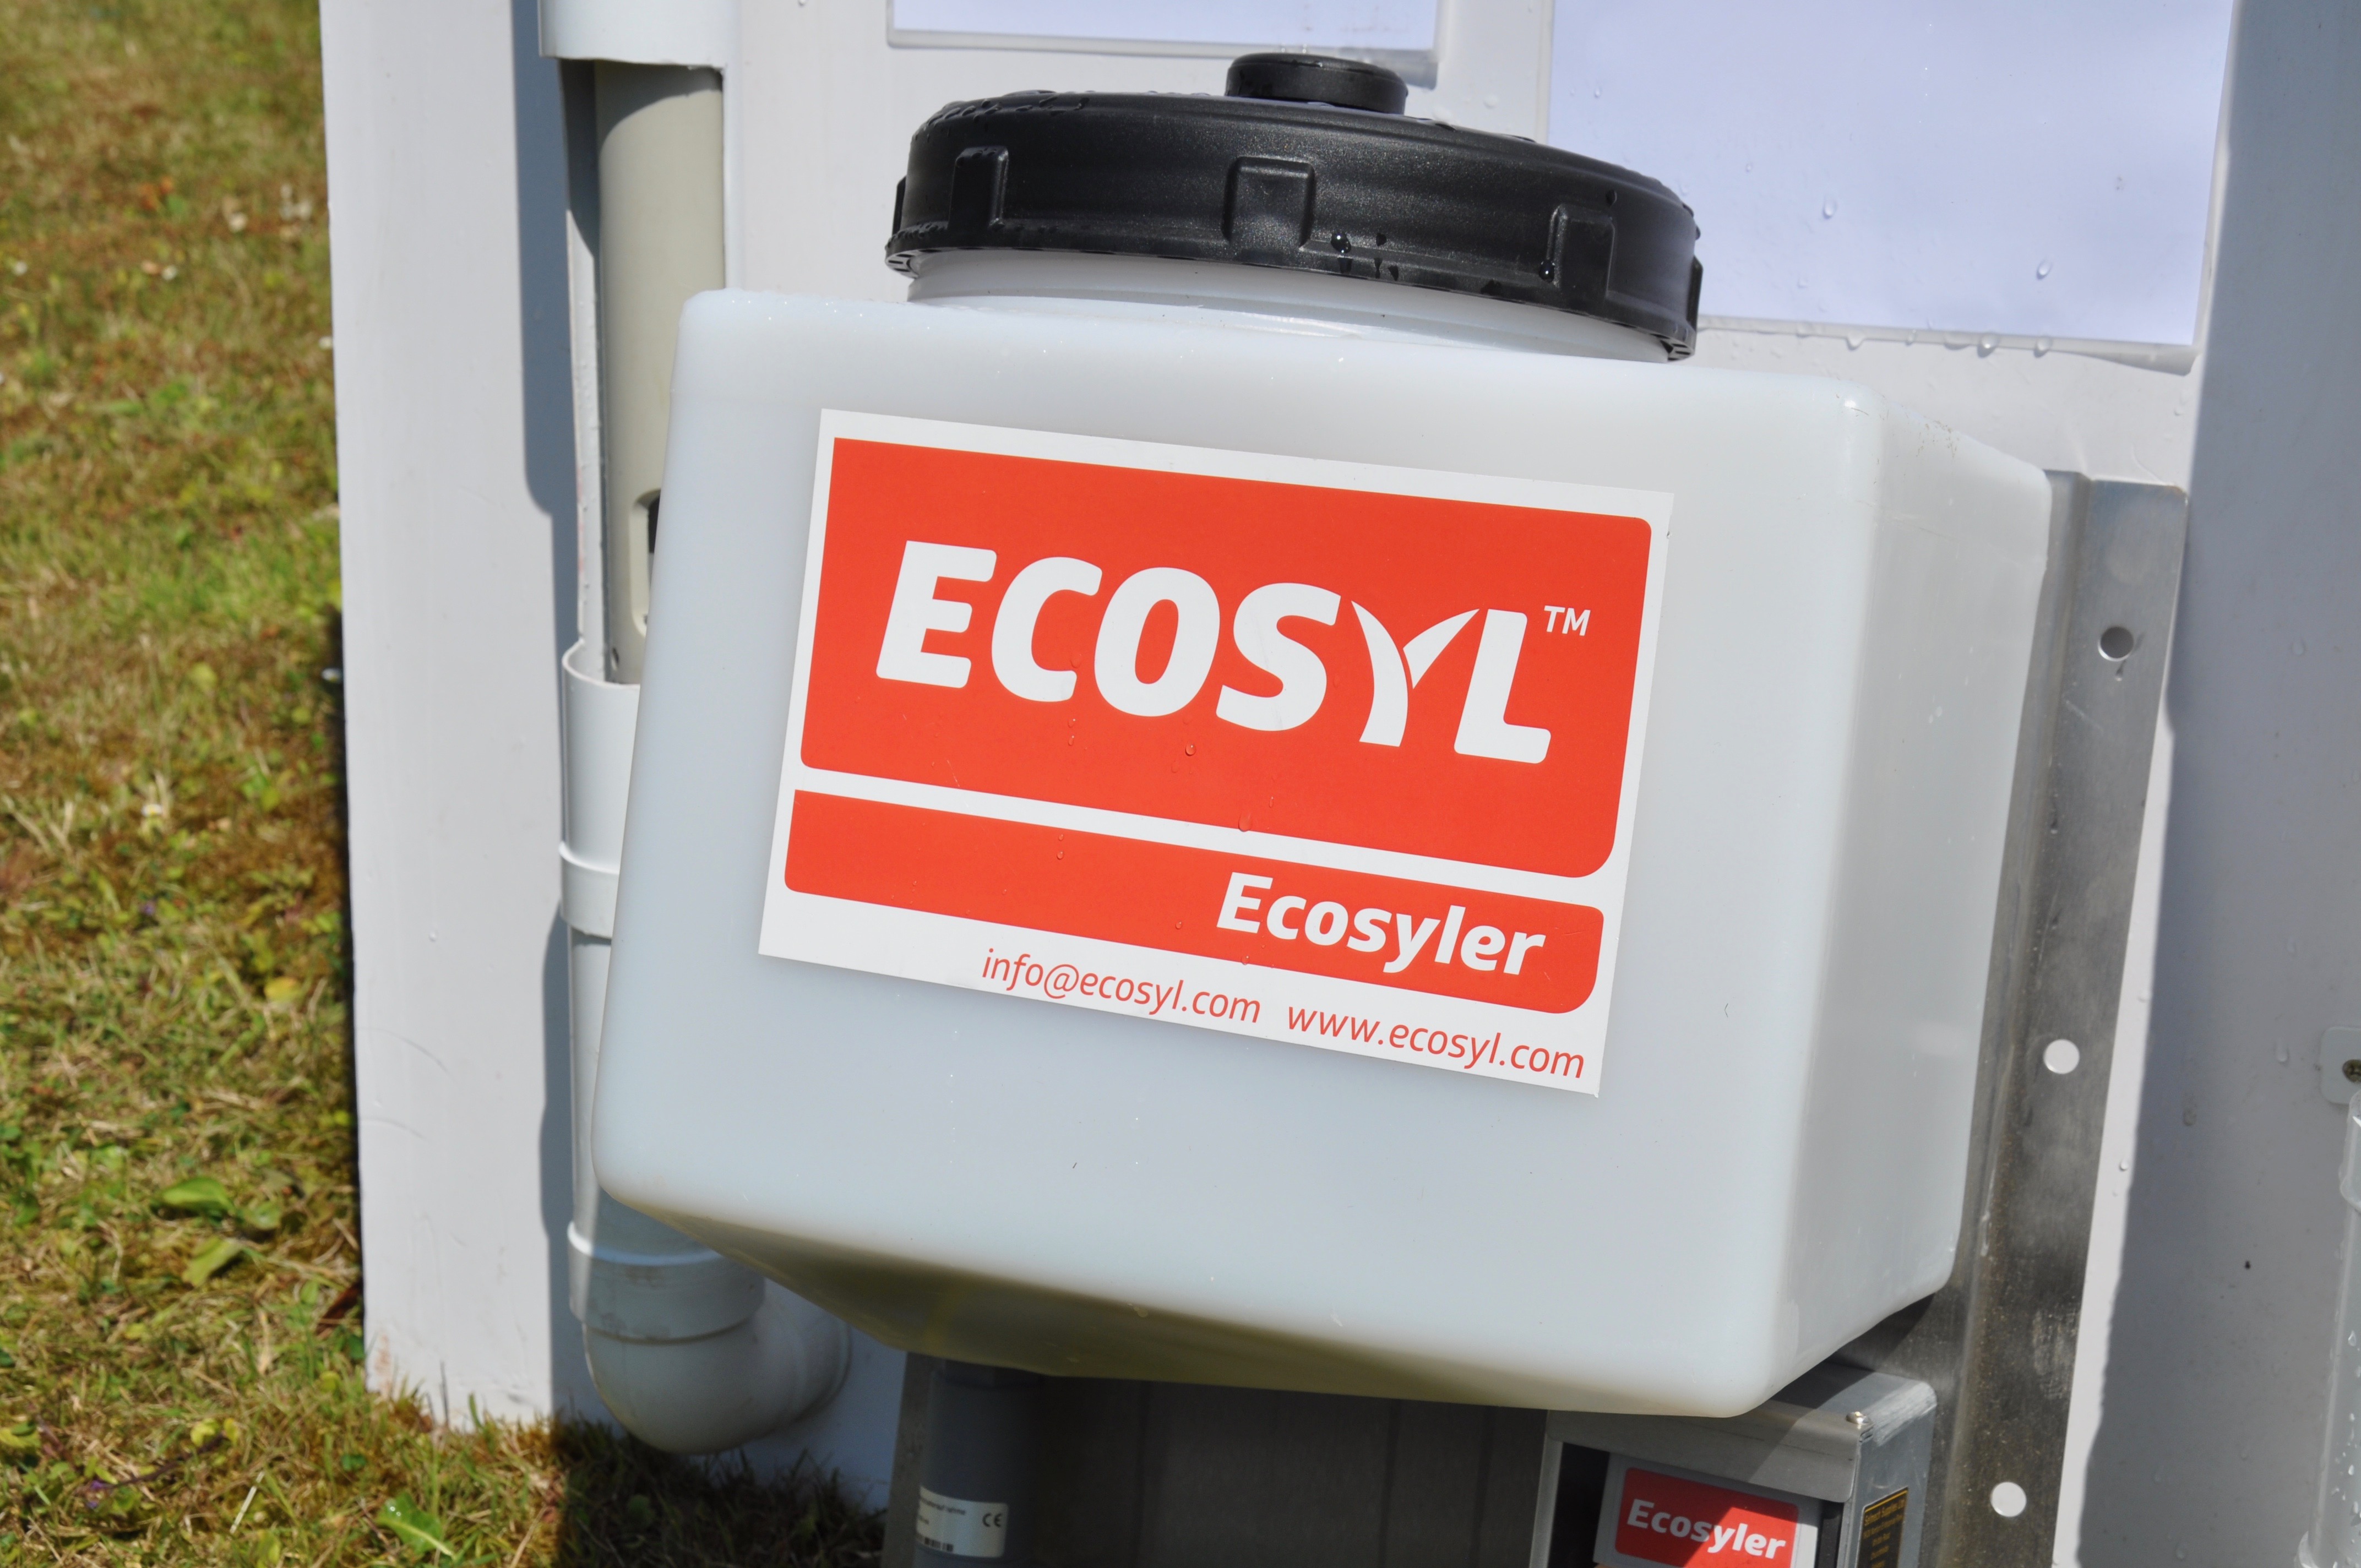 Ecosyler applicator